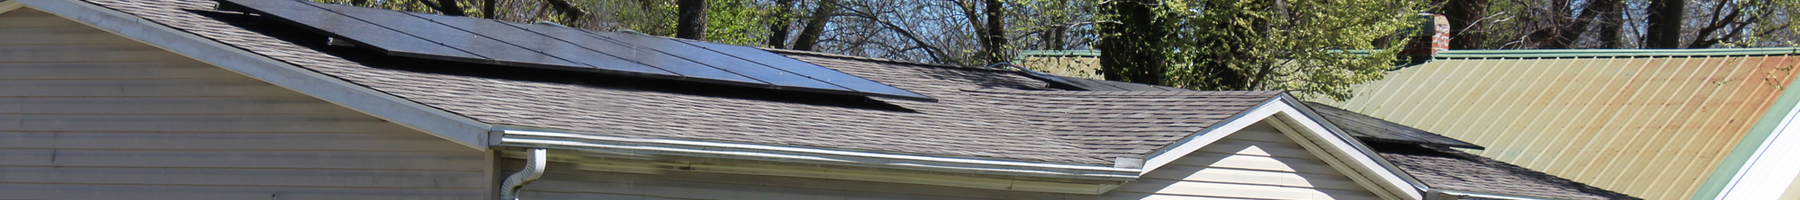 Casa de un piso, color blanquecino, con dos paneles solares separados en el techo.